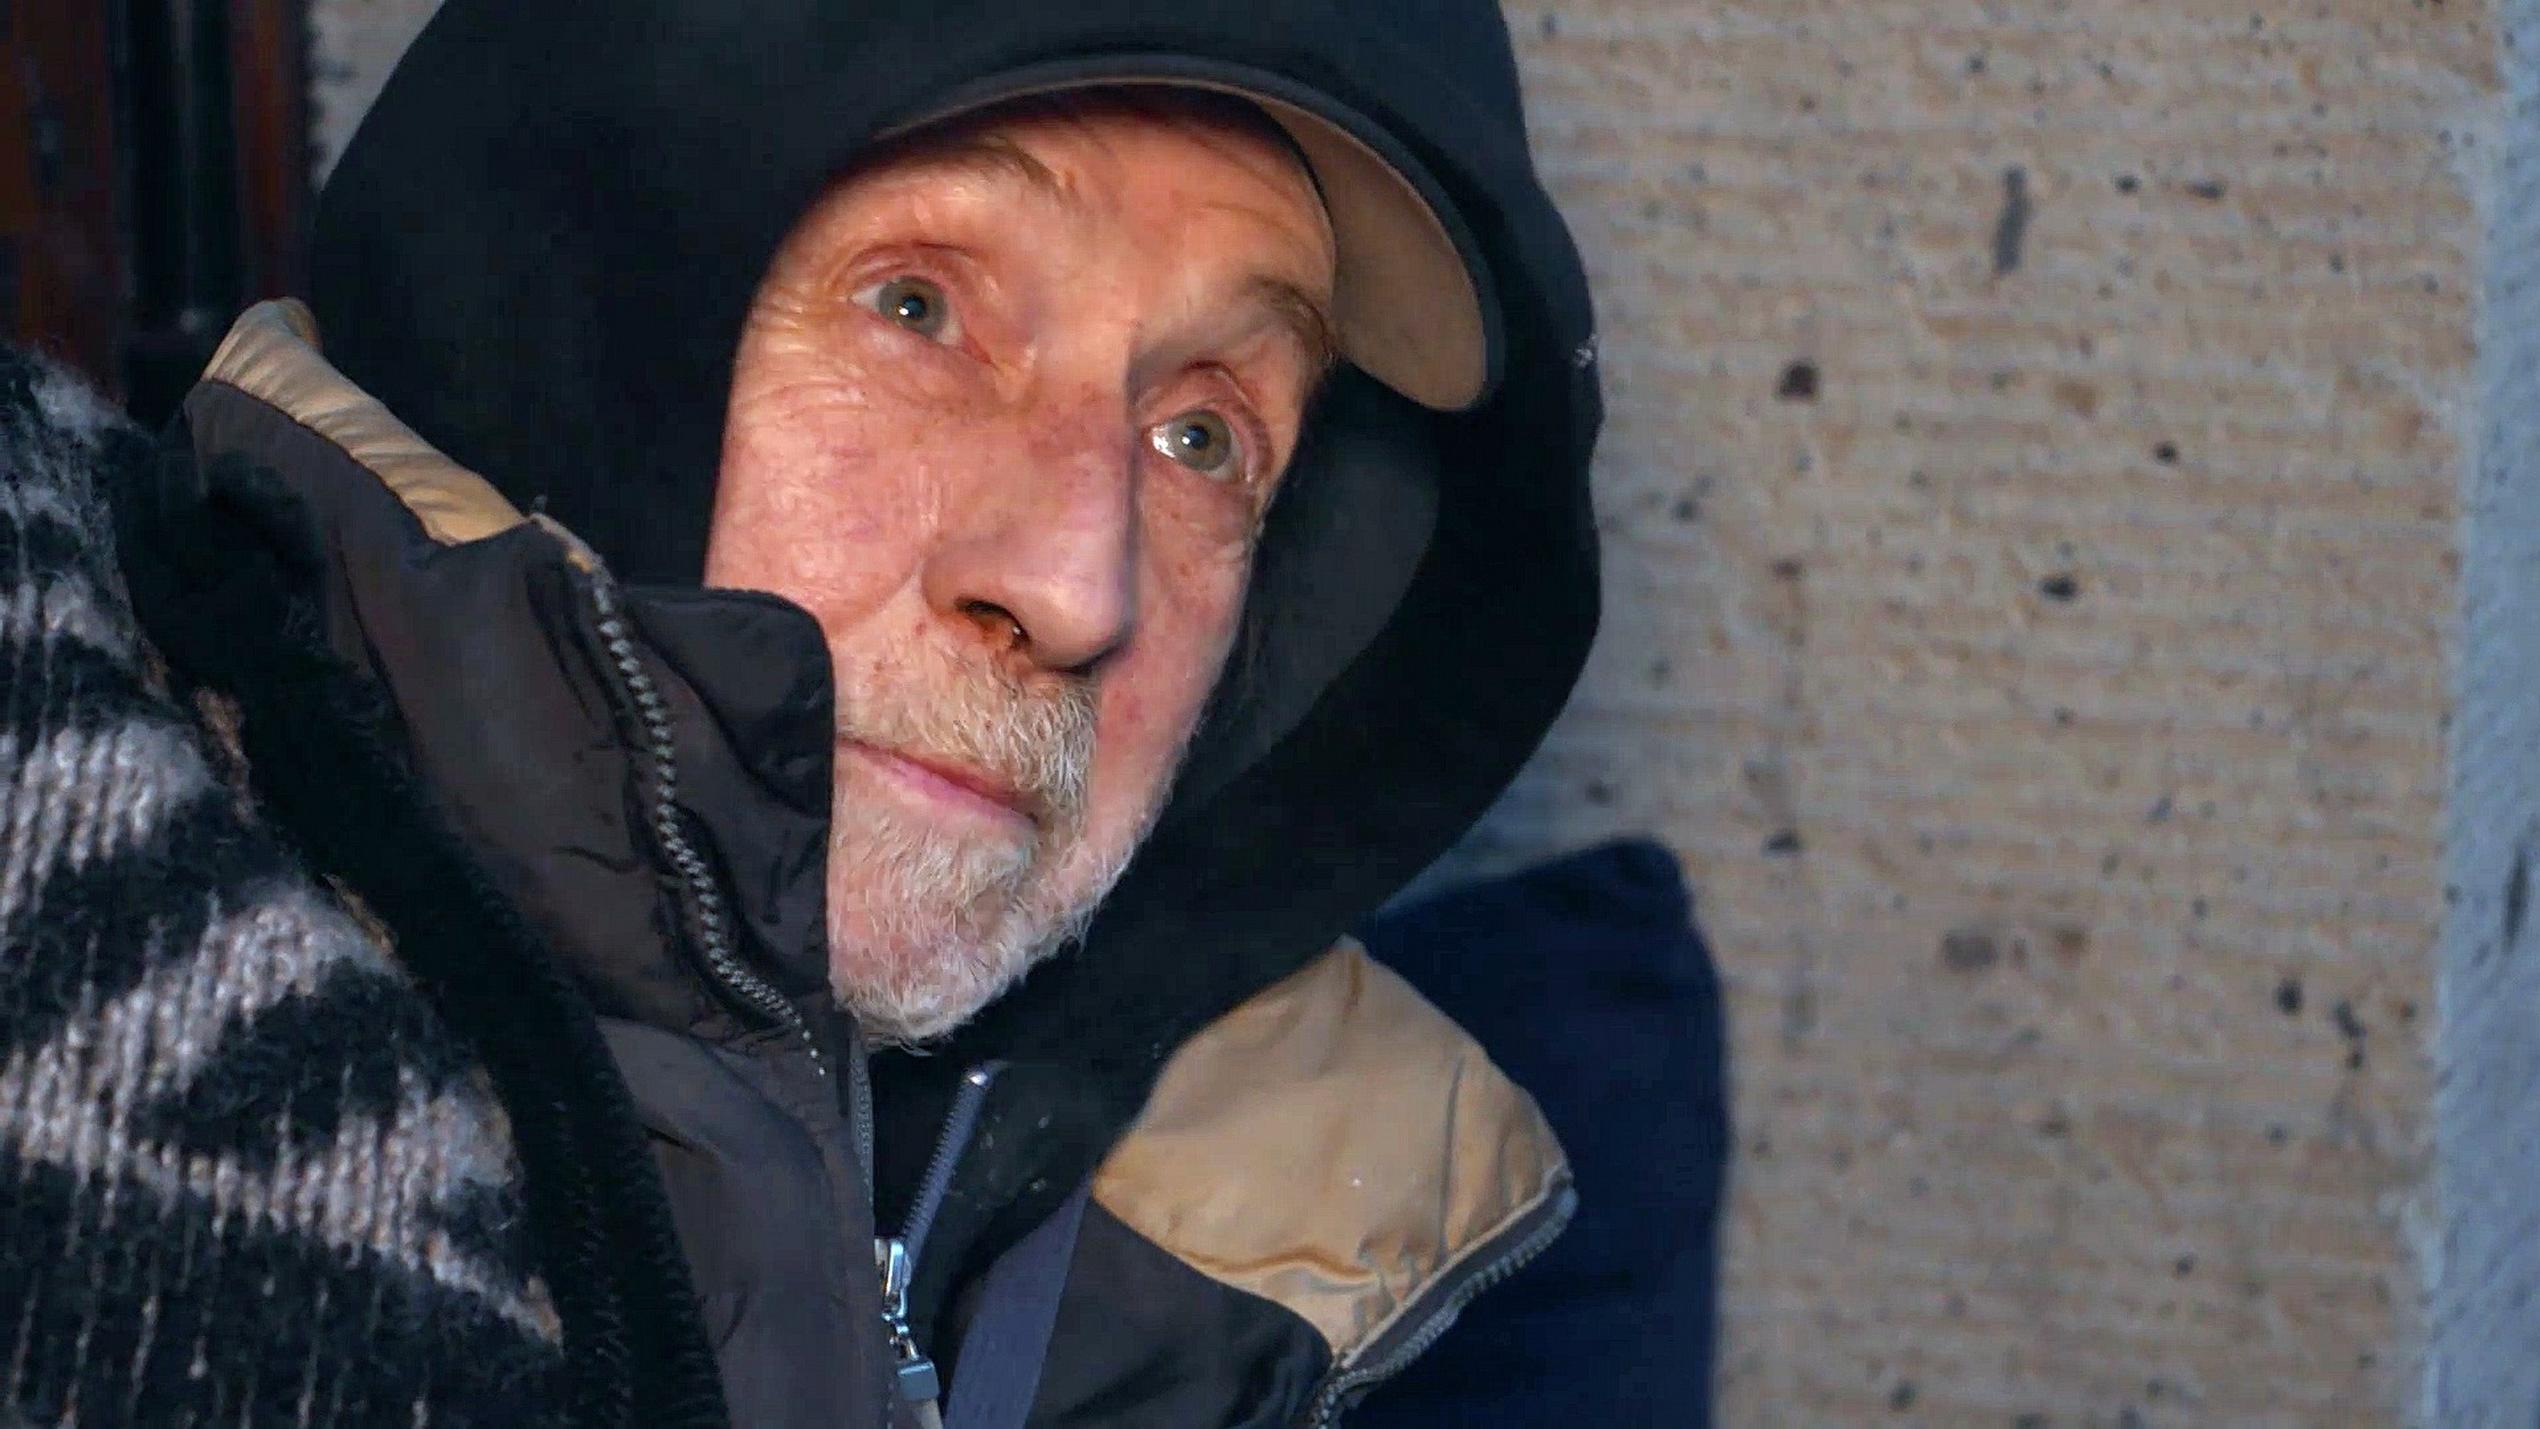 "Obdachlos - Einzug in ein neues Leben" begleitet Helmut (62) auf seinem Weg in ein neues Leben. Er ist heroinabhängig und schläft trotz eisiger Kälte im Freien. Gelingt der Einzug in eine neues Leben mit einer eigenen Wohnung als Starthilfe?+++ Die 